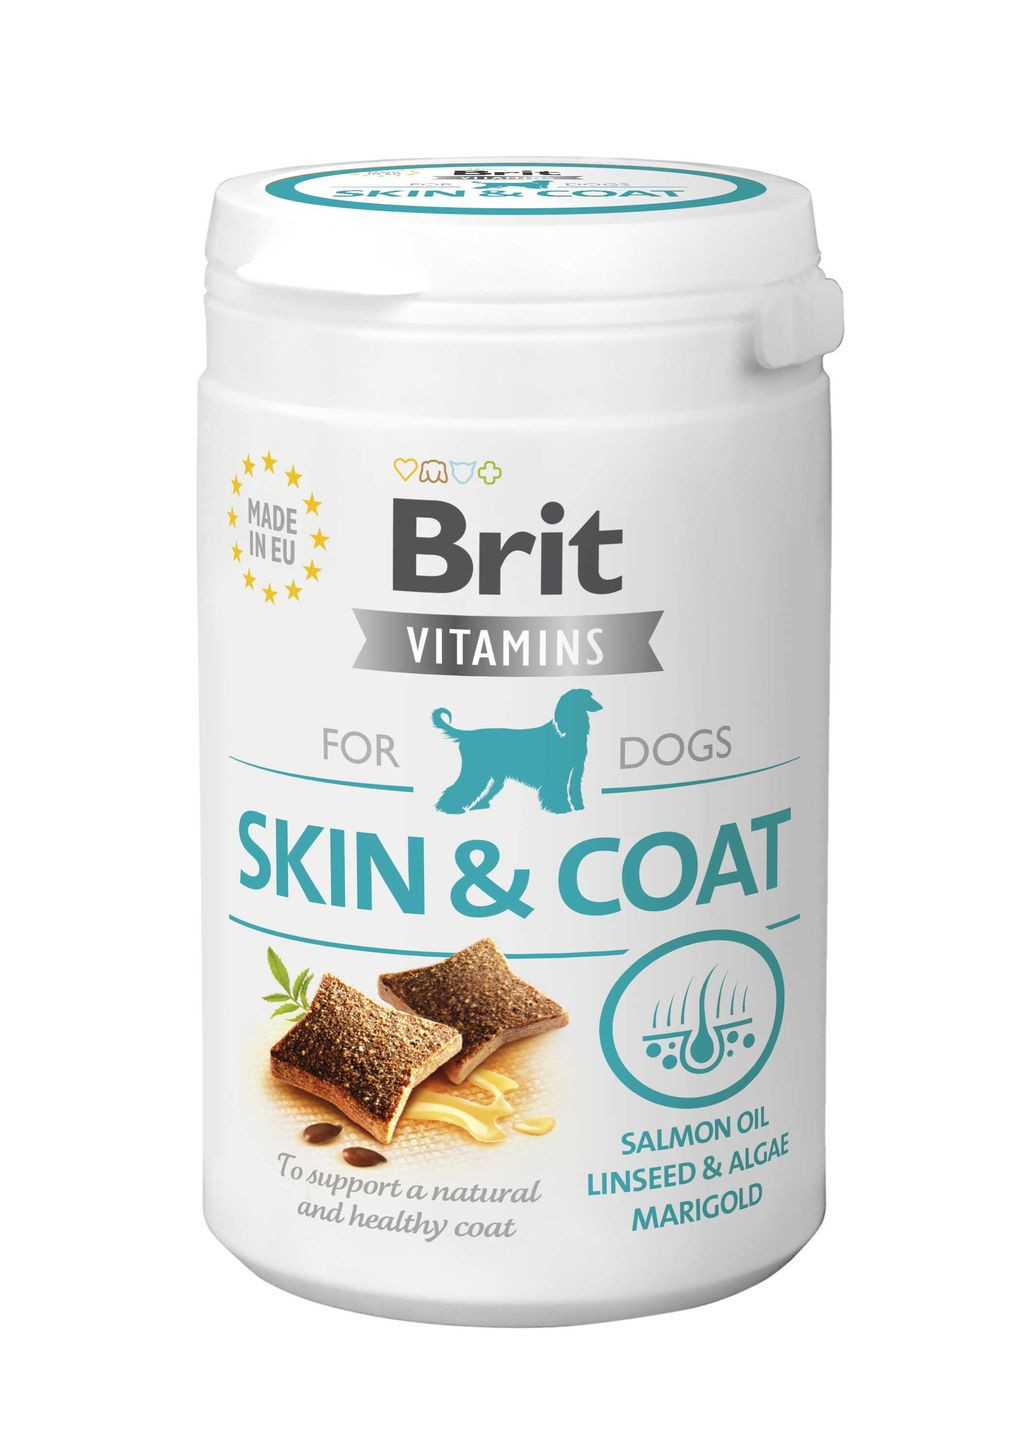 Вітаміни для собак Vitamins Skin and Coat для шкіри і шерсті, 150 г Brit (266900402)